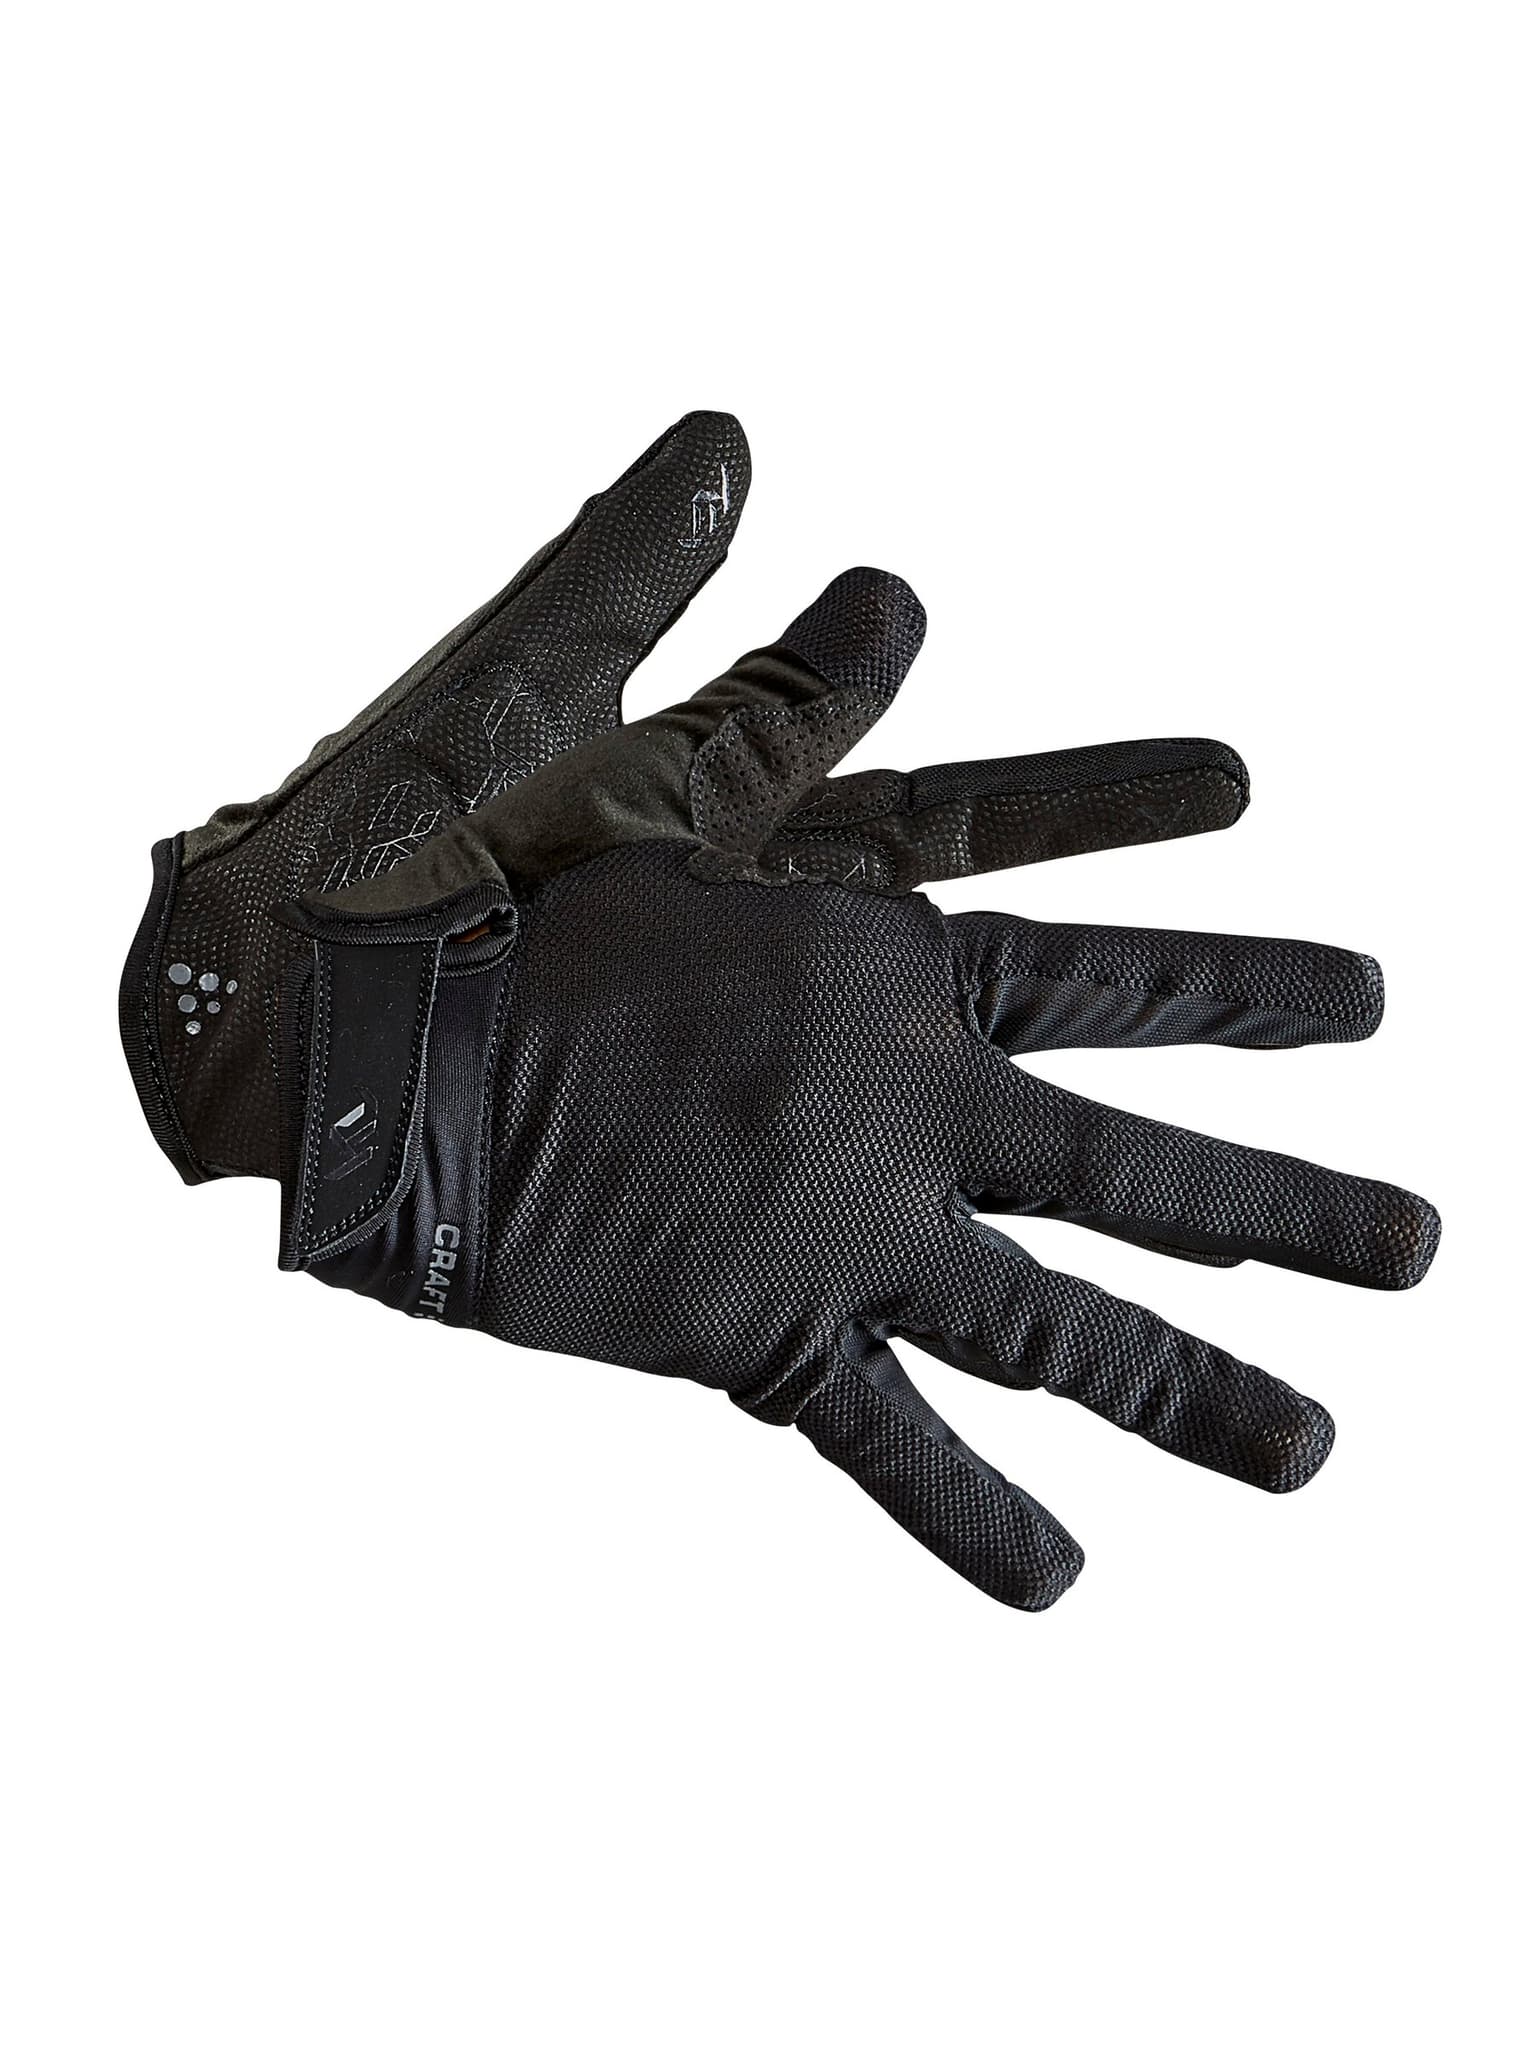 Craft Craft ADV PIONEER GEL GLOVE Handschuhe schwarz 1